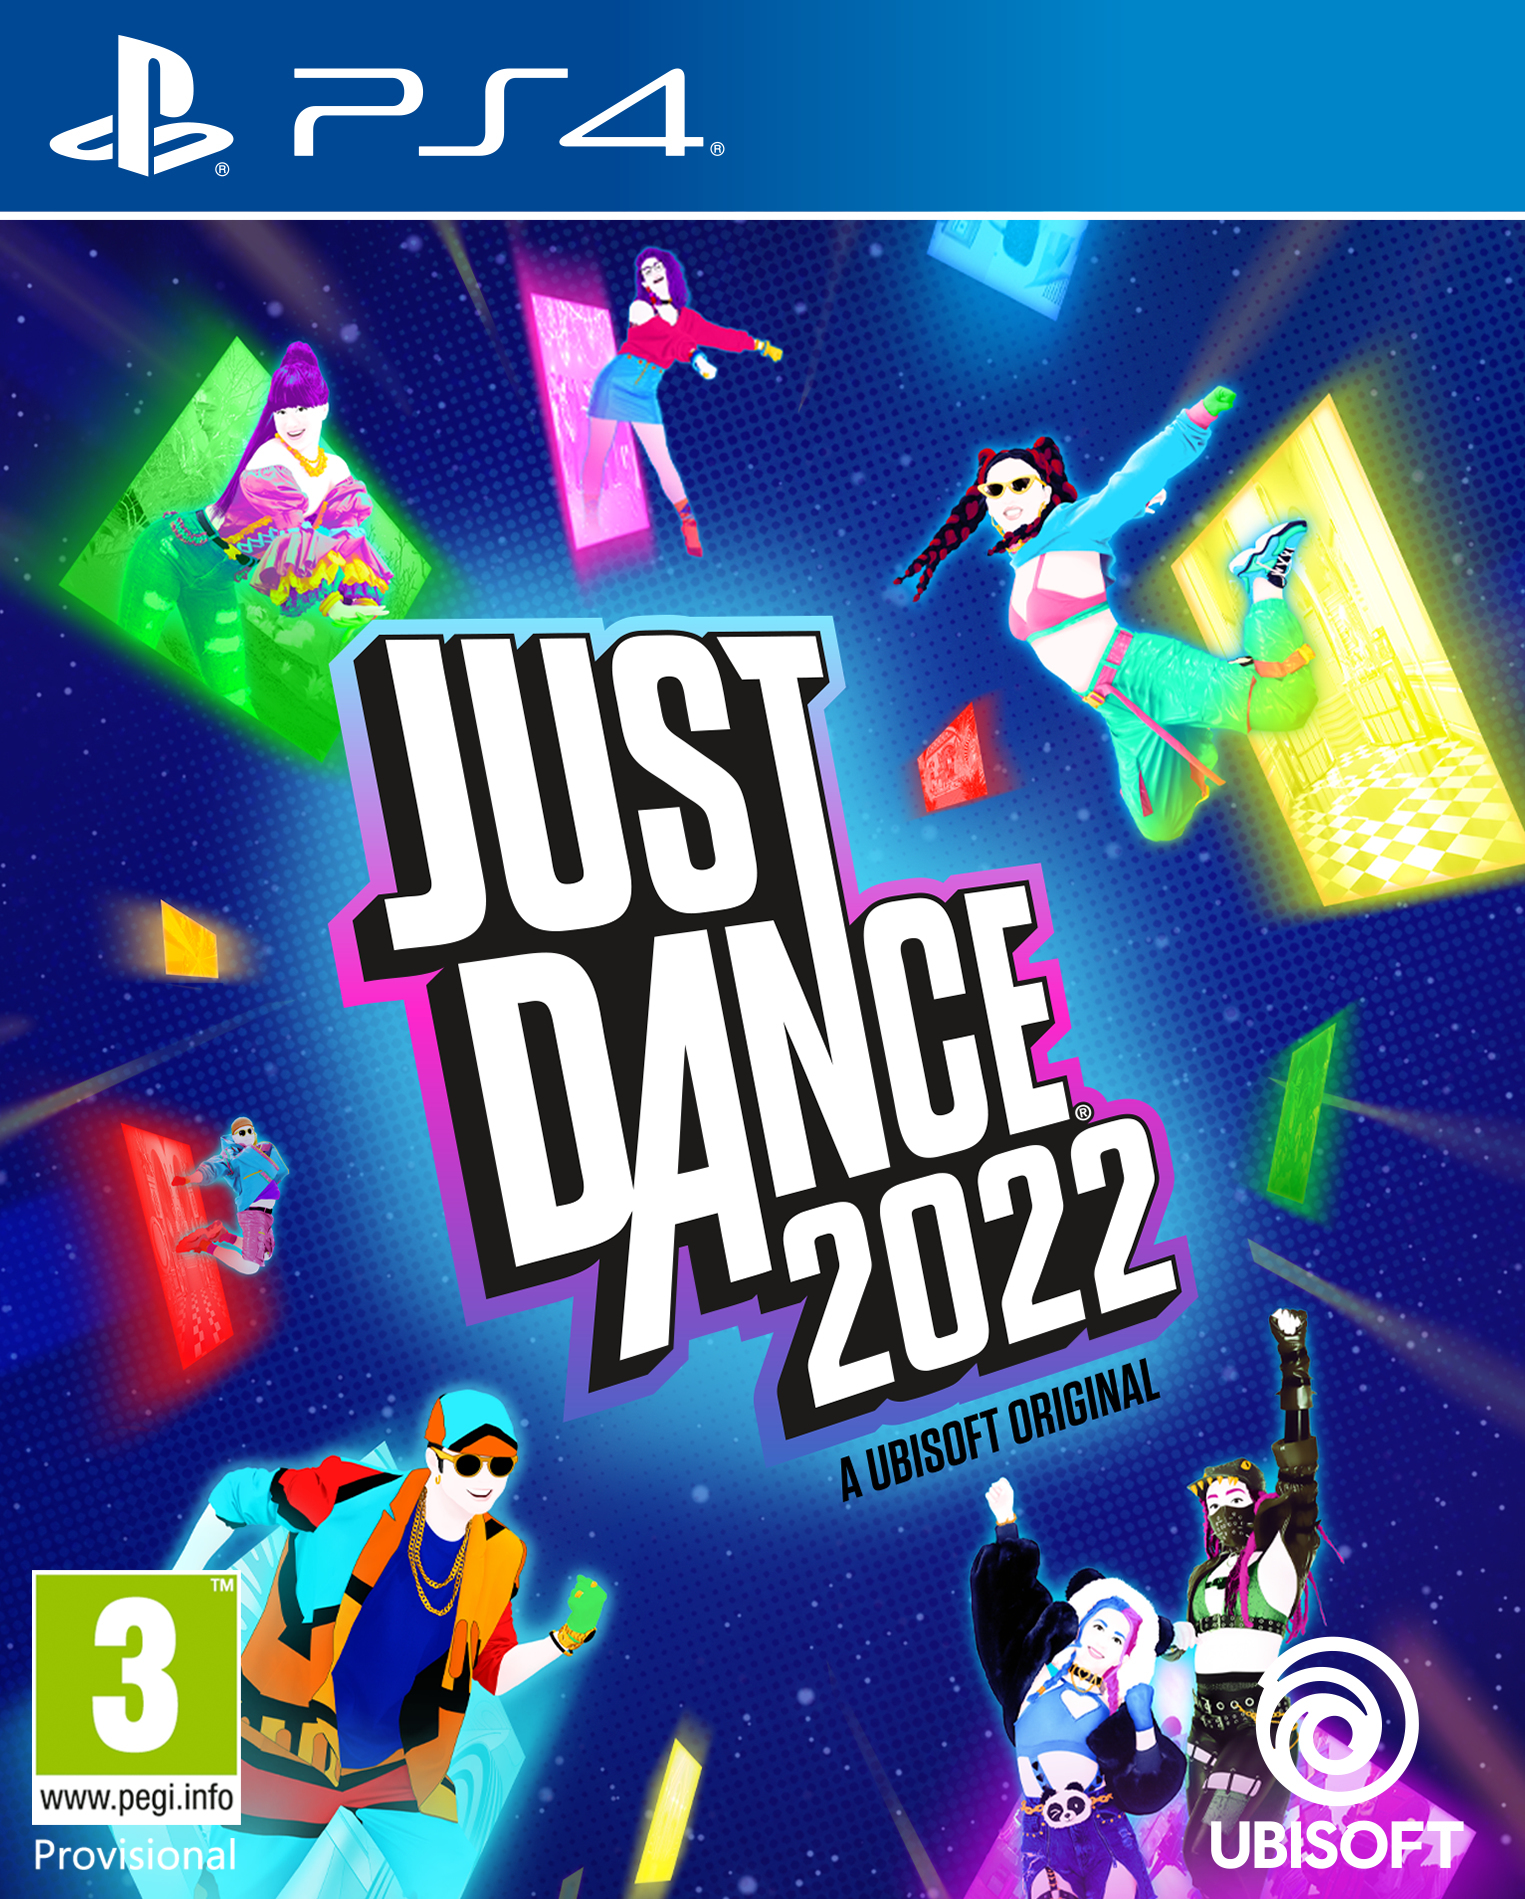 Ubisoft Just Dance 2022 Standard Multilingual PlayStation 4